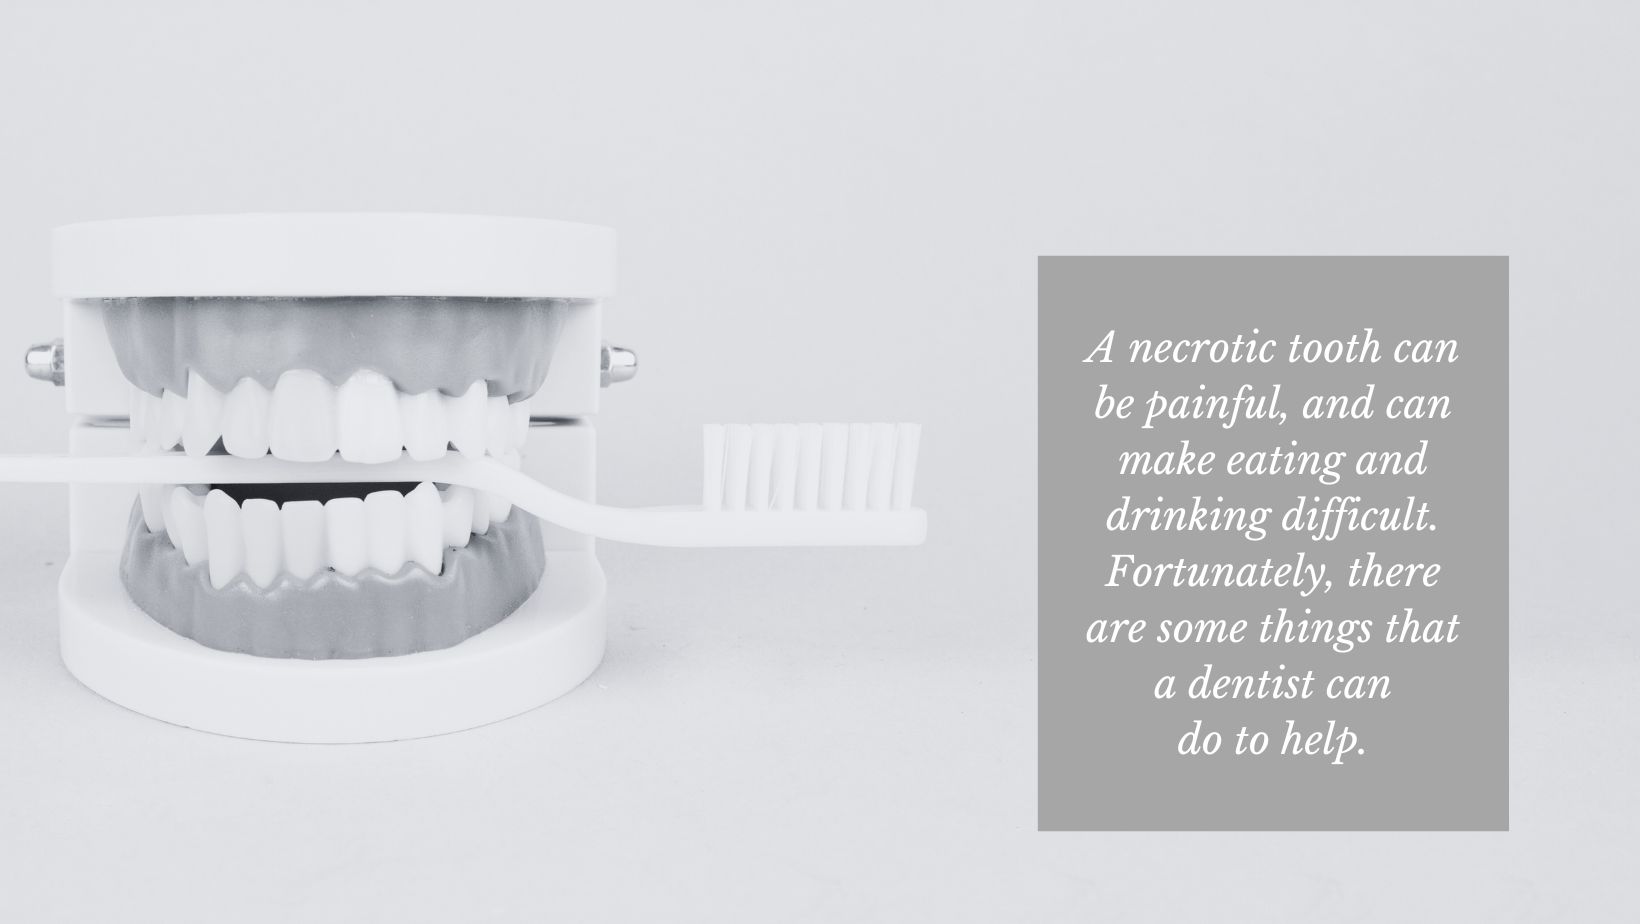 model of teeth reminder to brush teeth